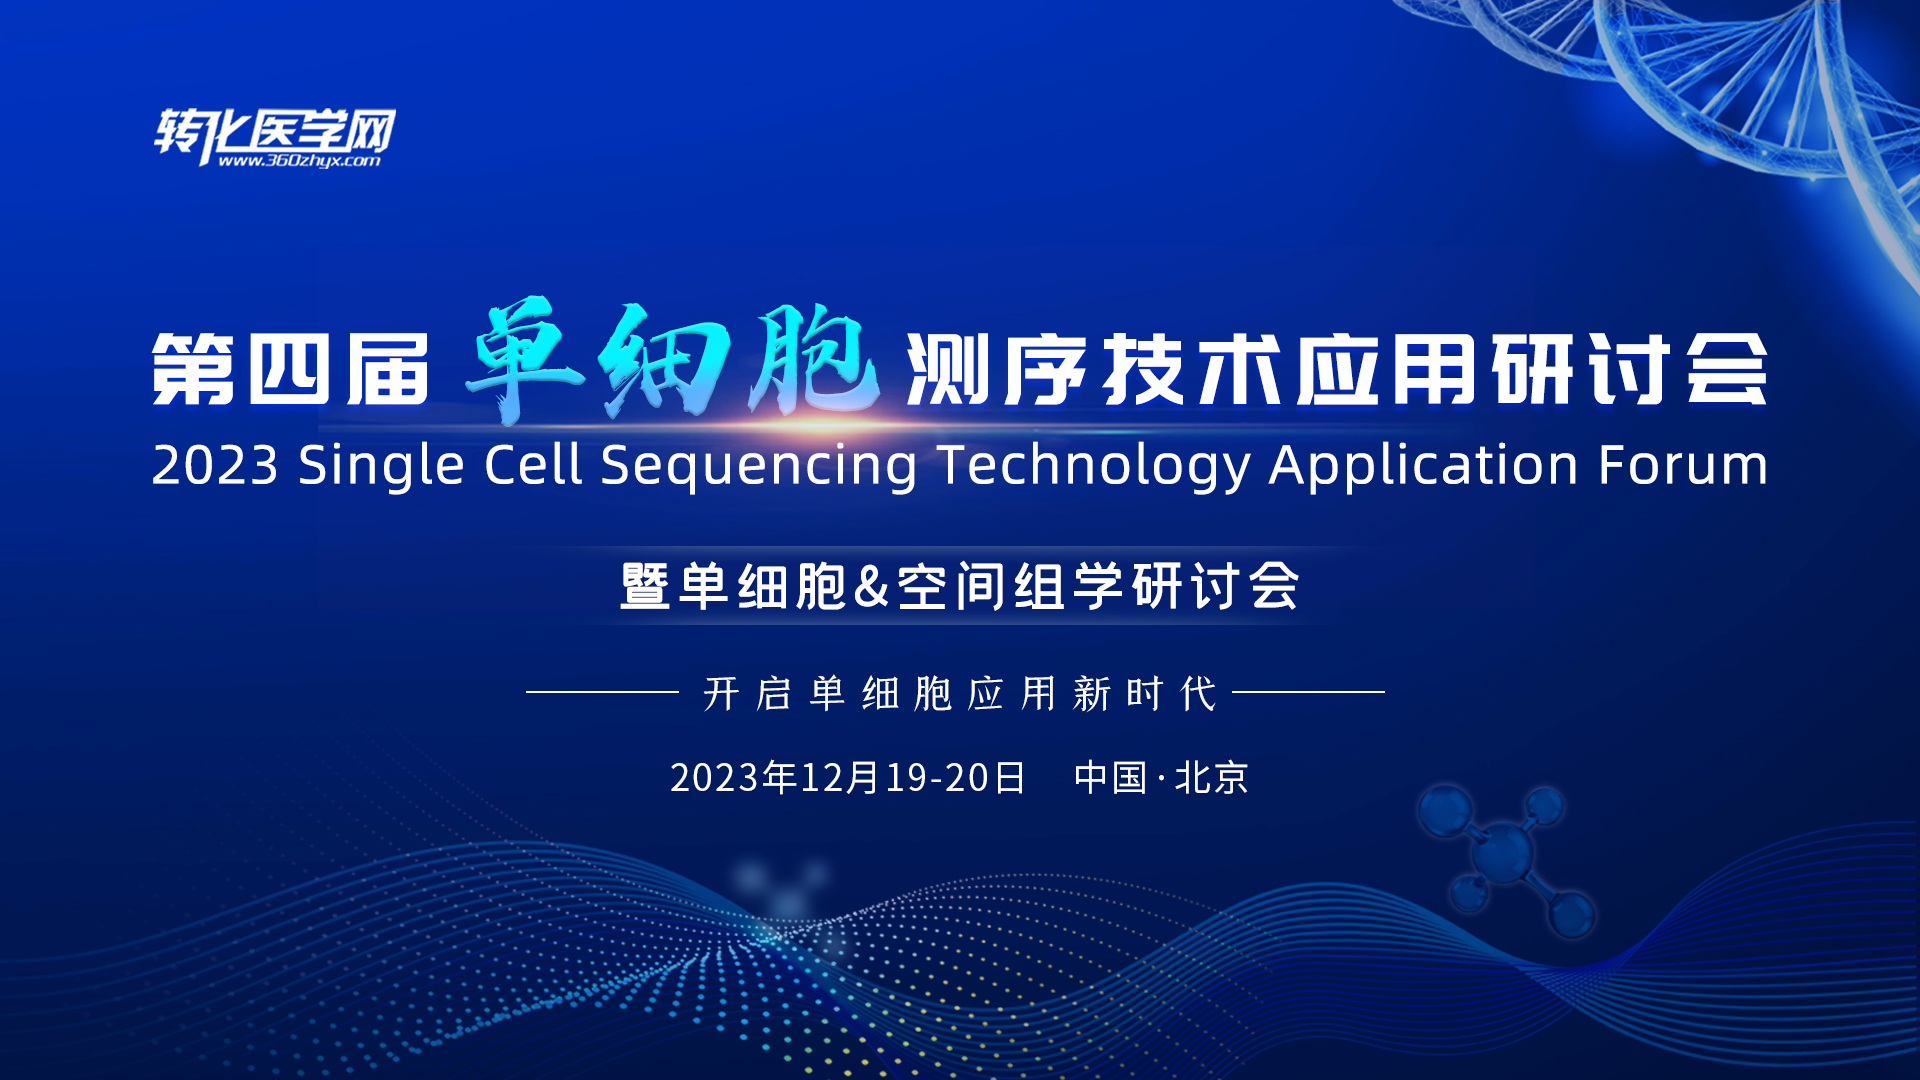 【参会提醒】第四届单细胞测序技术应用研讨会暨单细胞&空间组学研讨会12月19-20日在北京海淀召开，欢迎您的到来！！